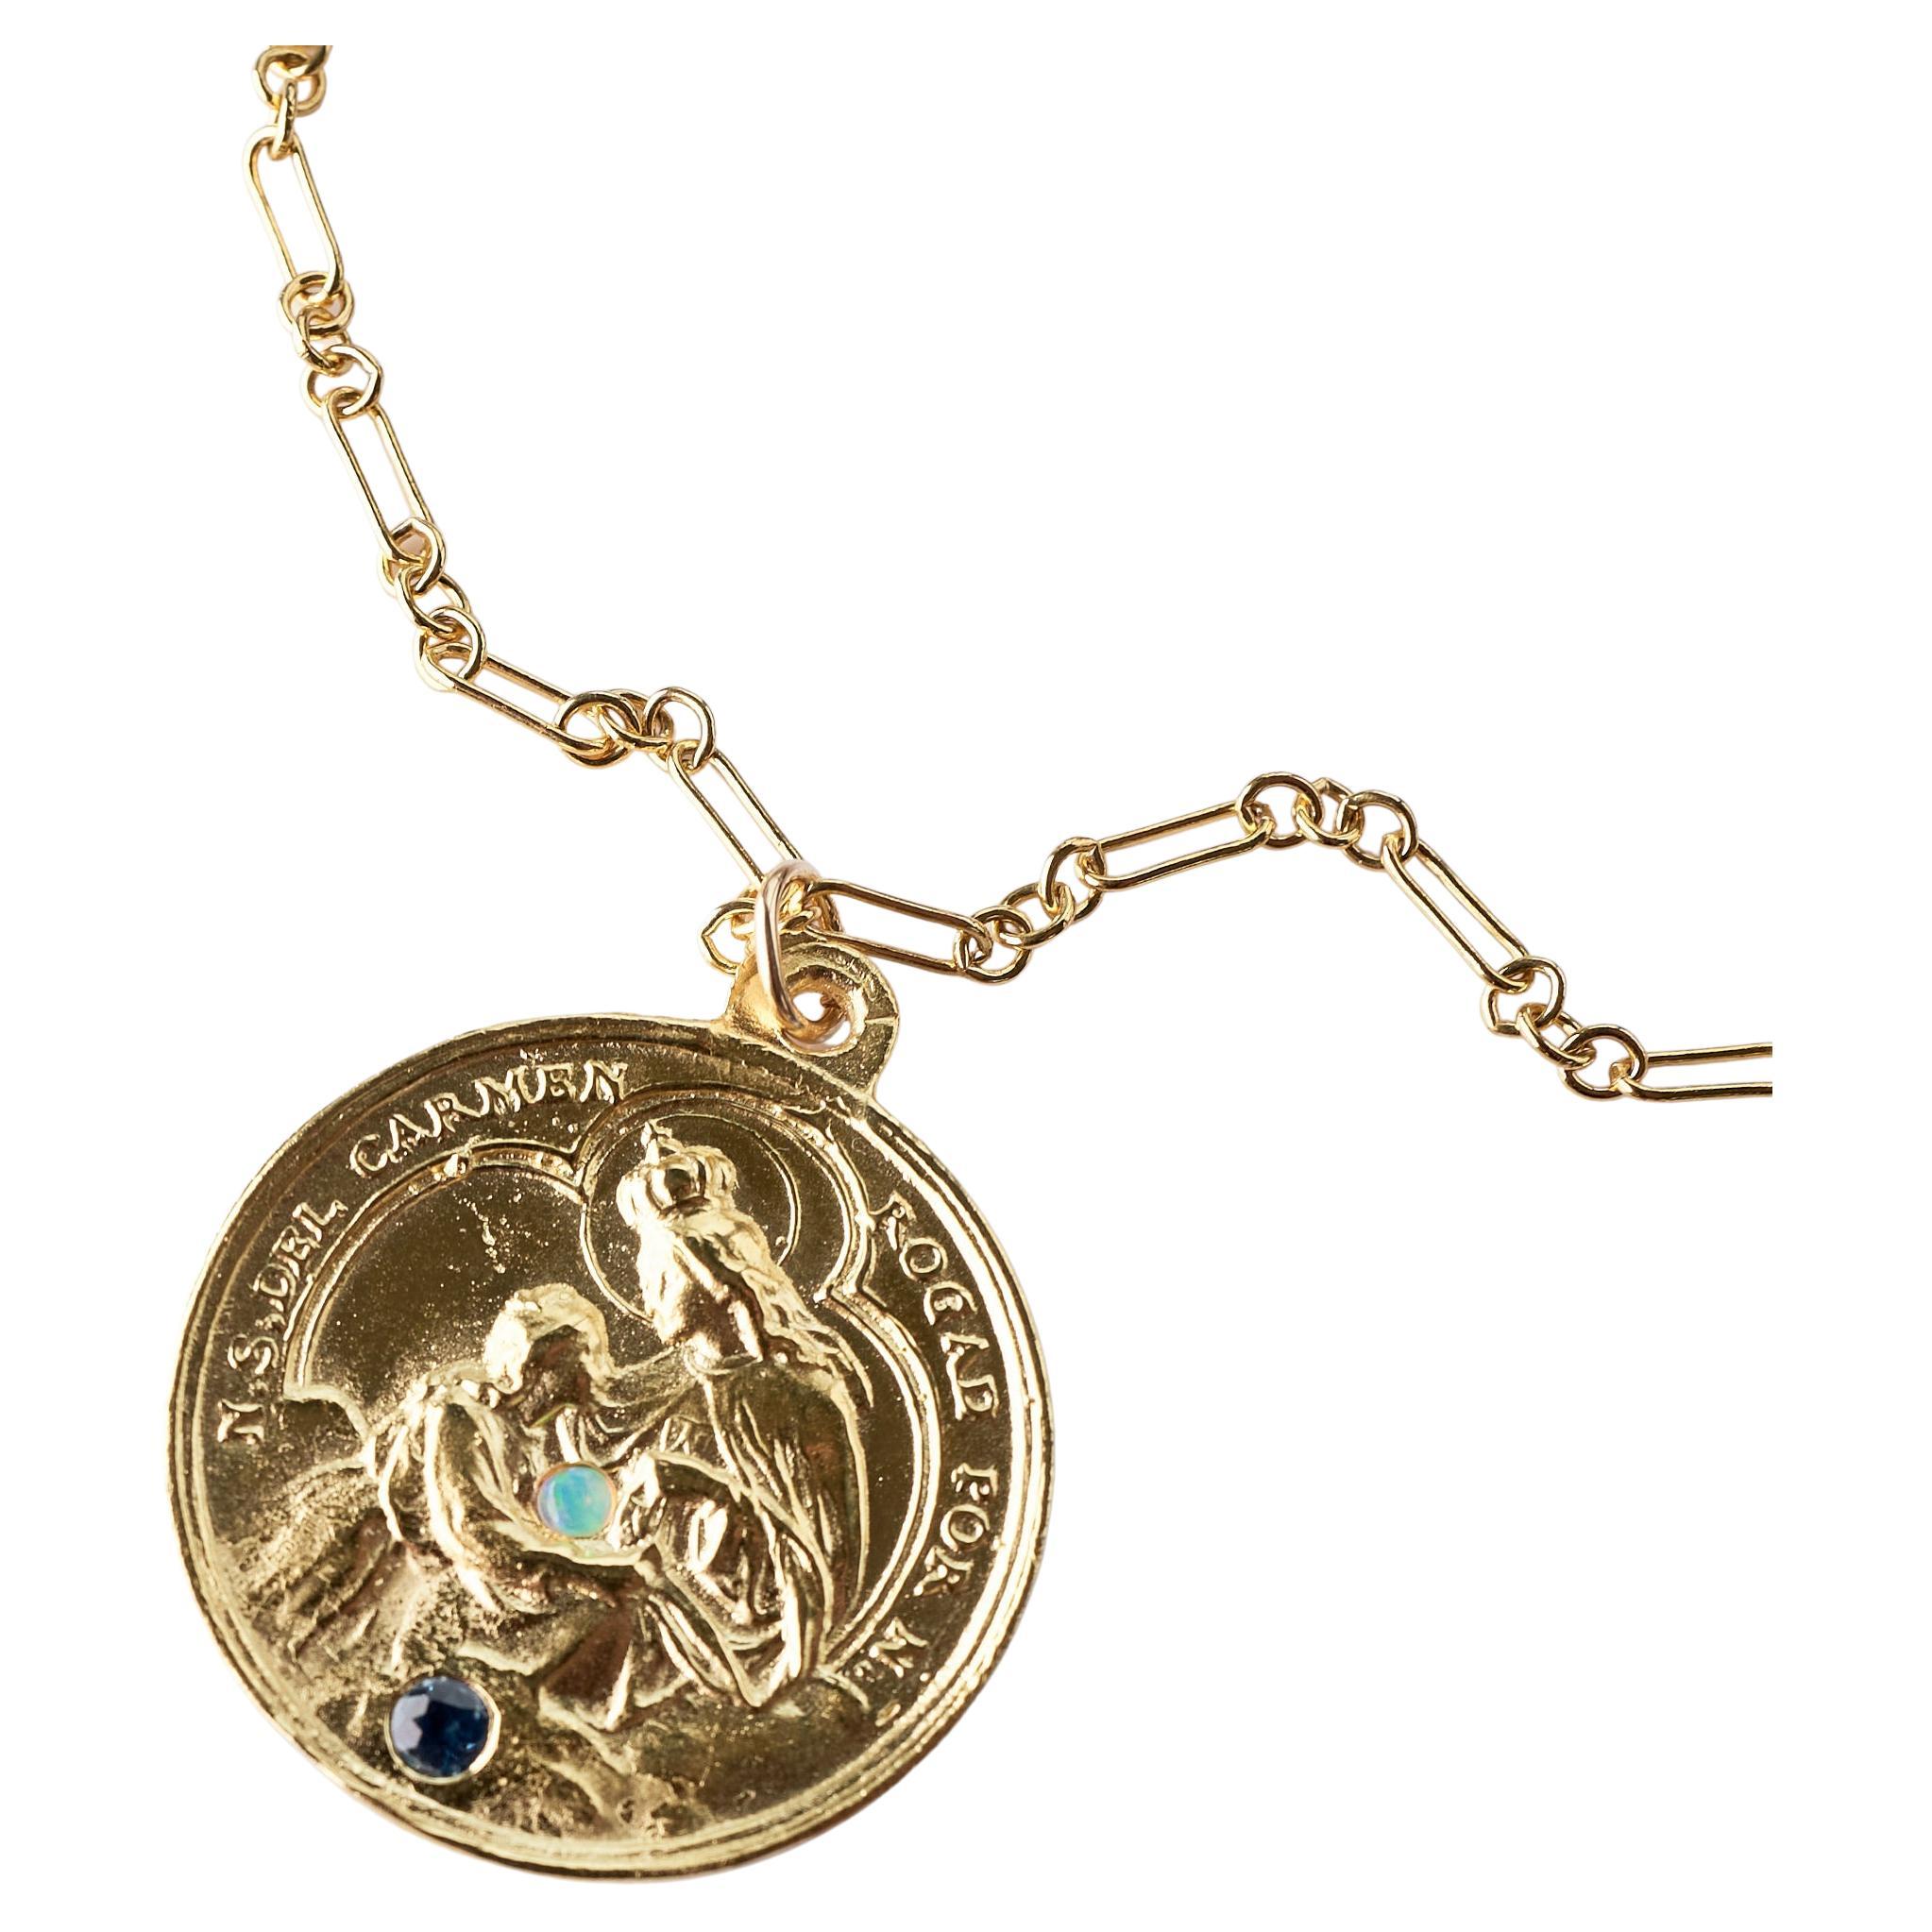 Saphir Opal Medaille Kette Halskette religiösen Goldton J Dauphin
Goldplattierte Medaille und goldgefüllte Kette

Symbole oder Medaillen können zu einem mächtigen Werkzeug in unserem Arsenal für das Spirituelle werden. 
Seit dem Altertum werden